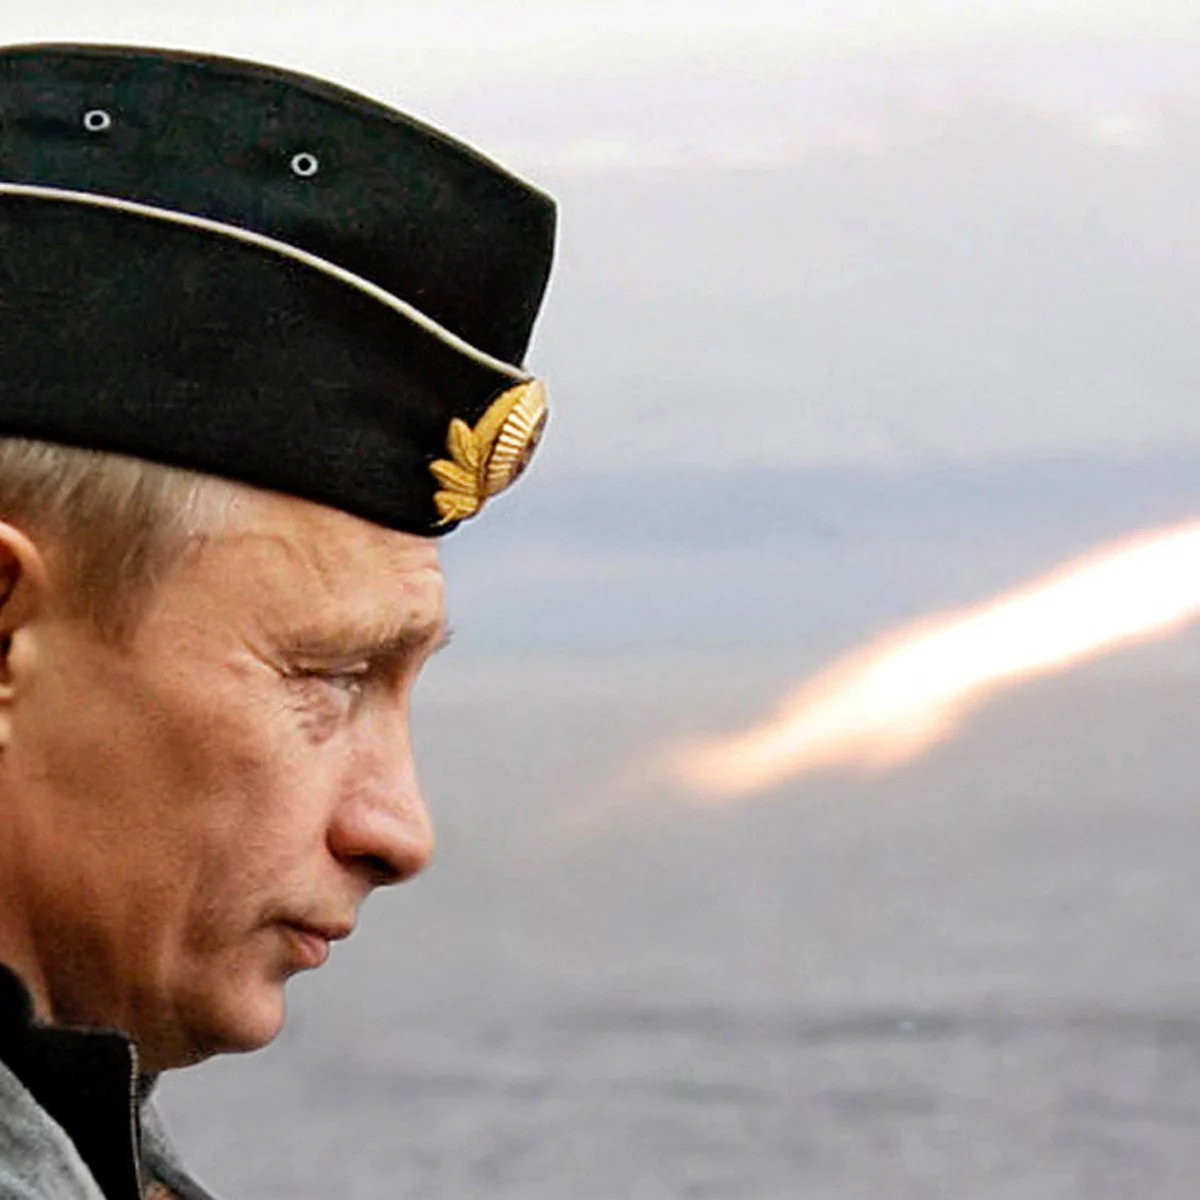 Rusia pospone de manera unilateral las conversaciones con Estados Unidos sobre desarme nuclear